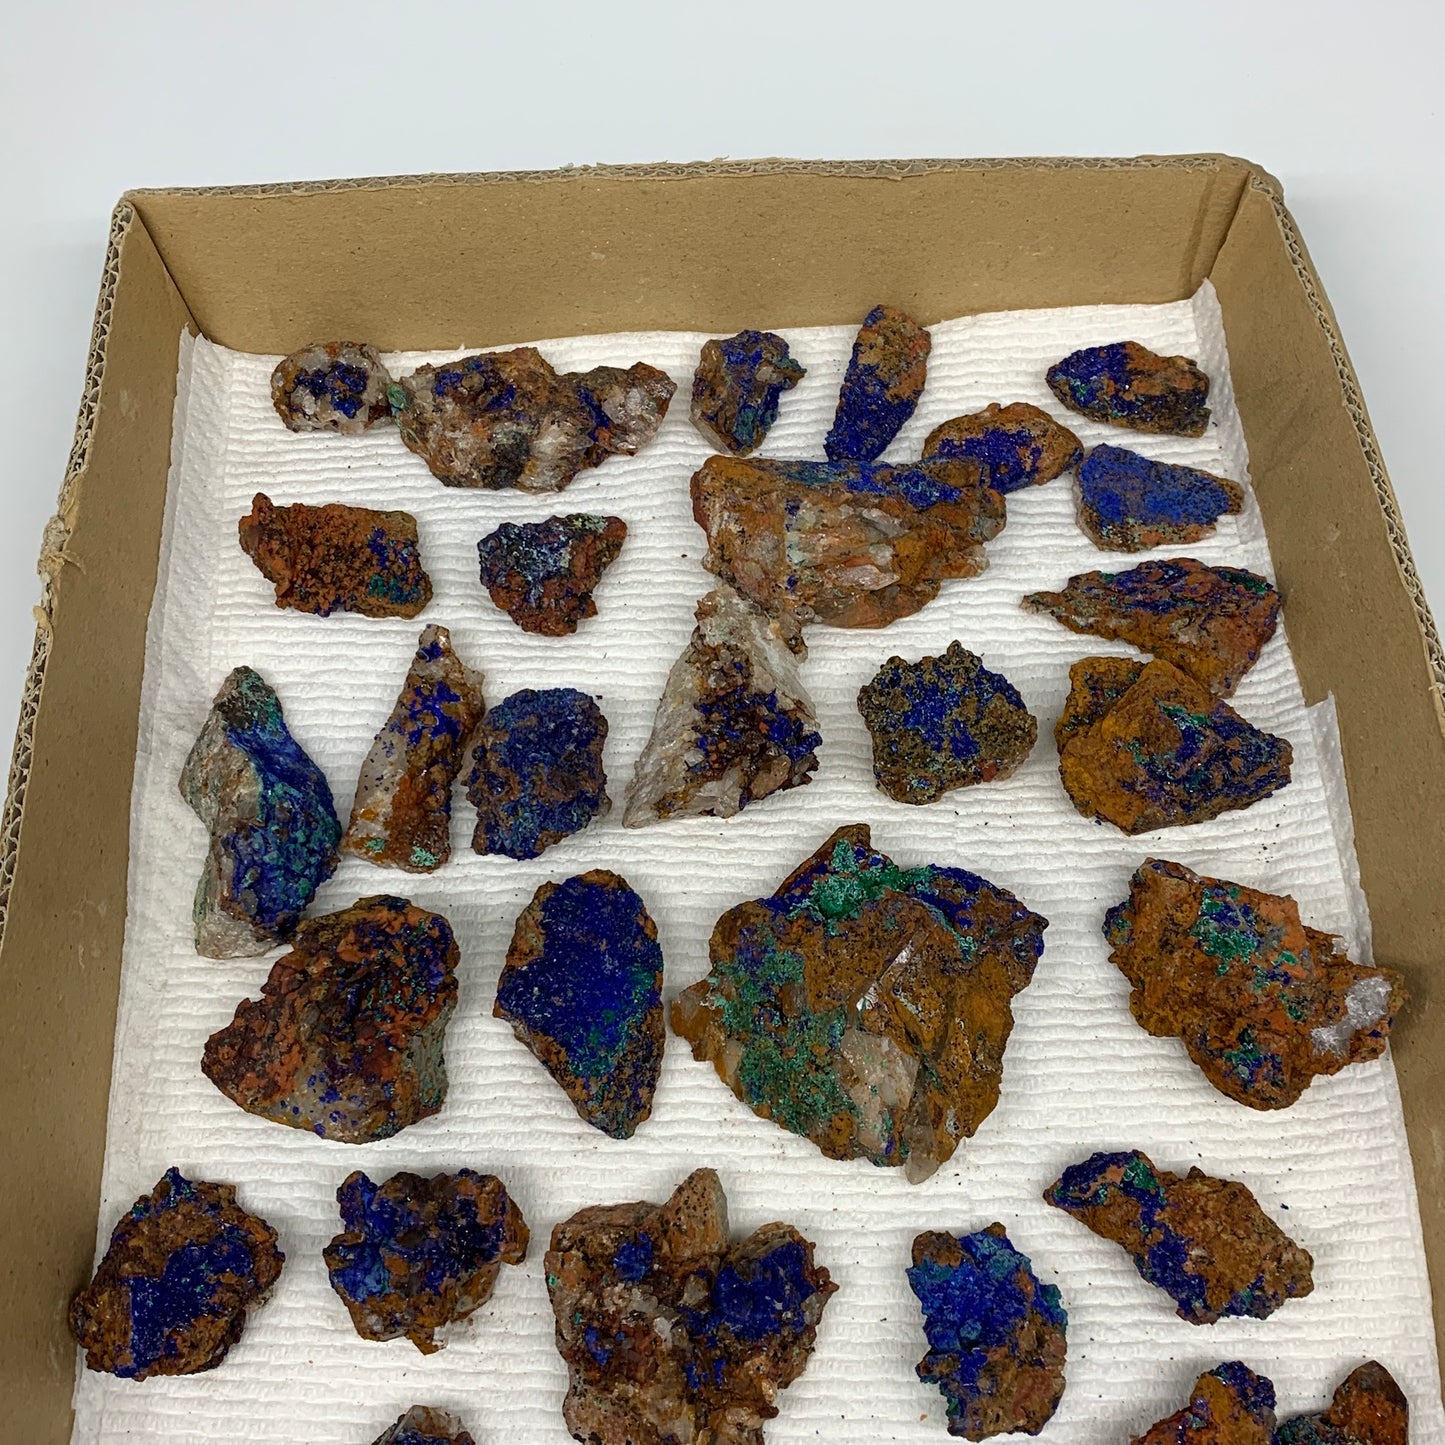 900g, 1"-2.6", Small Pieces Rough Azurite Malachite Mineral Specimen, B10948